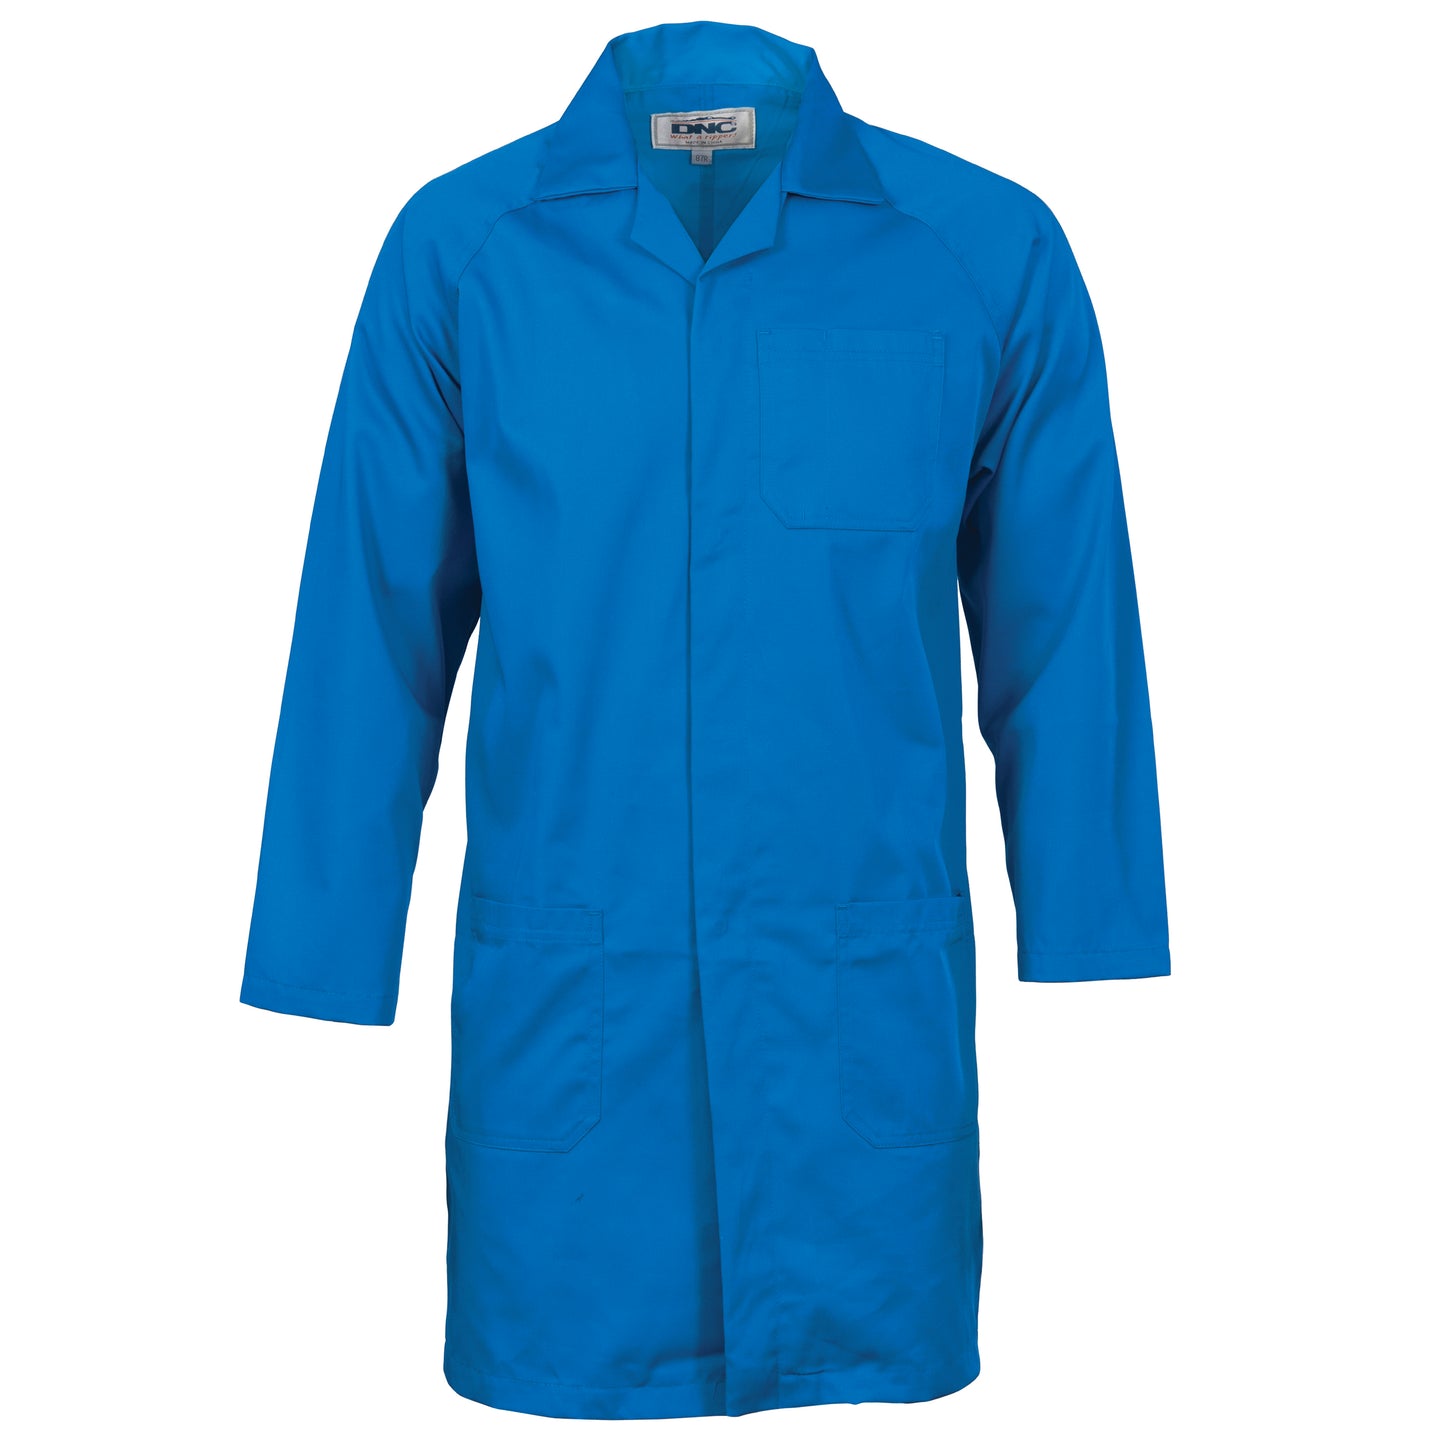 DNC Polyester cotton dust coat (Lab Coat) 3502 - Star Uniforms Australia